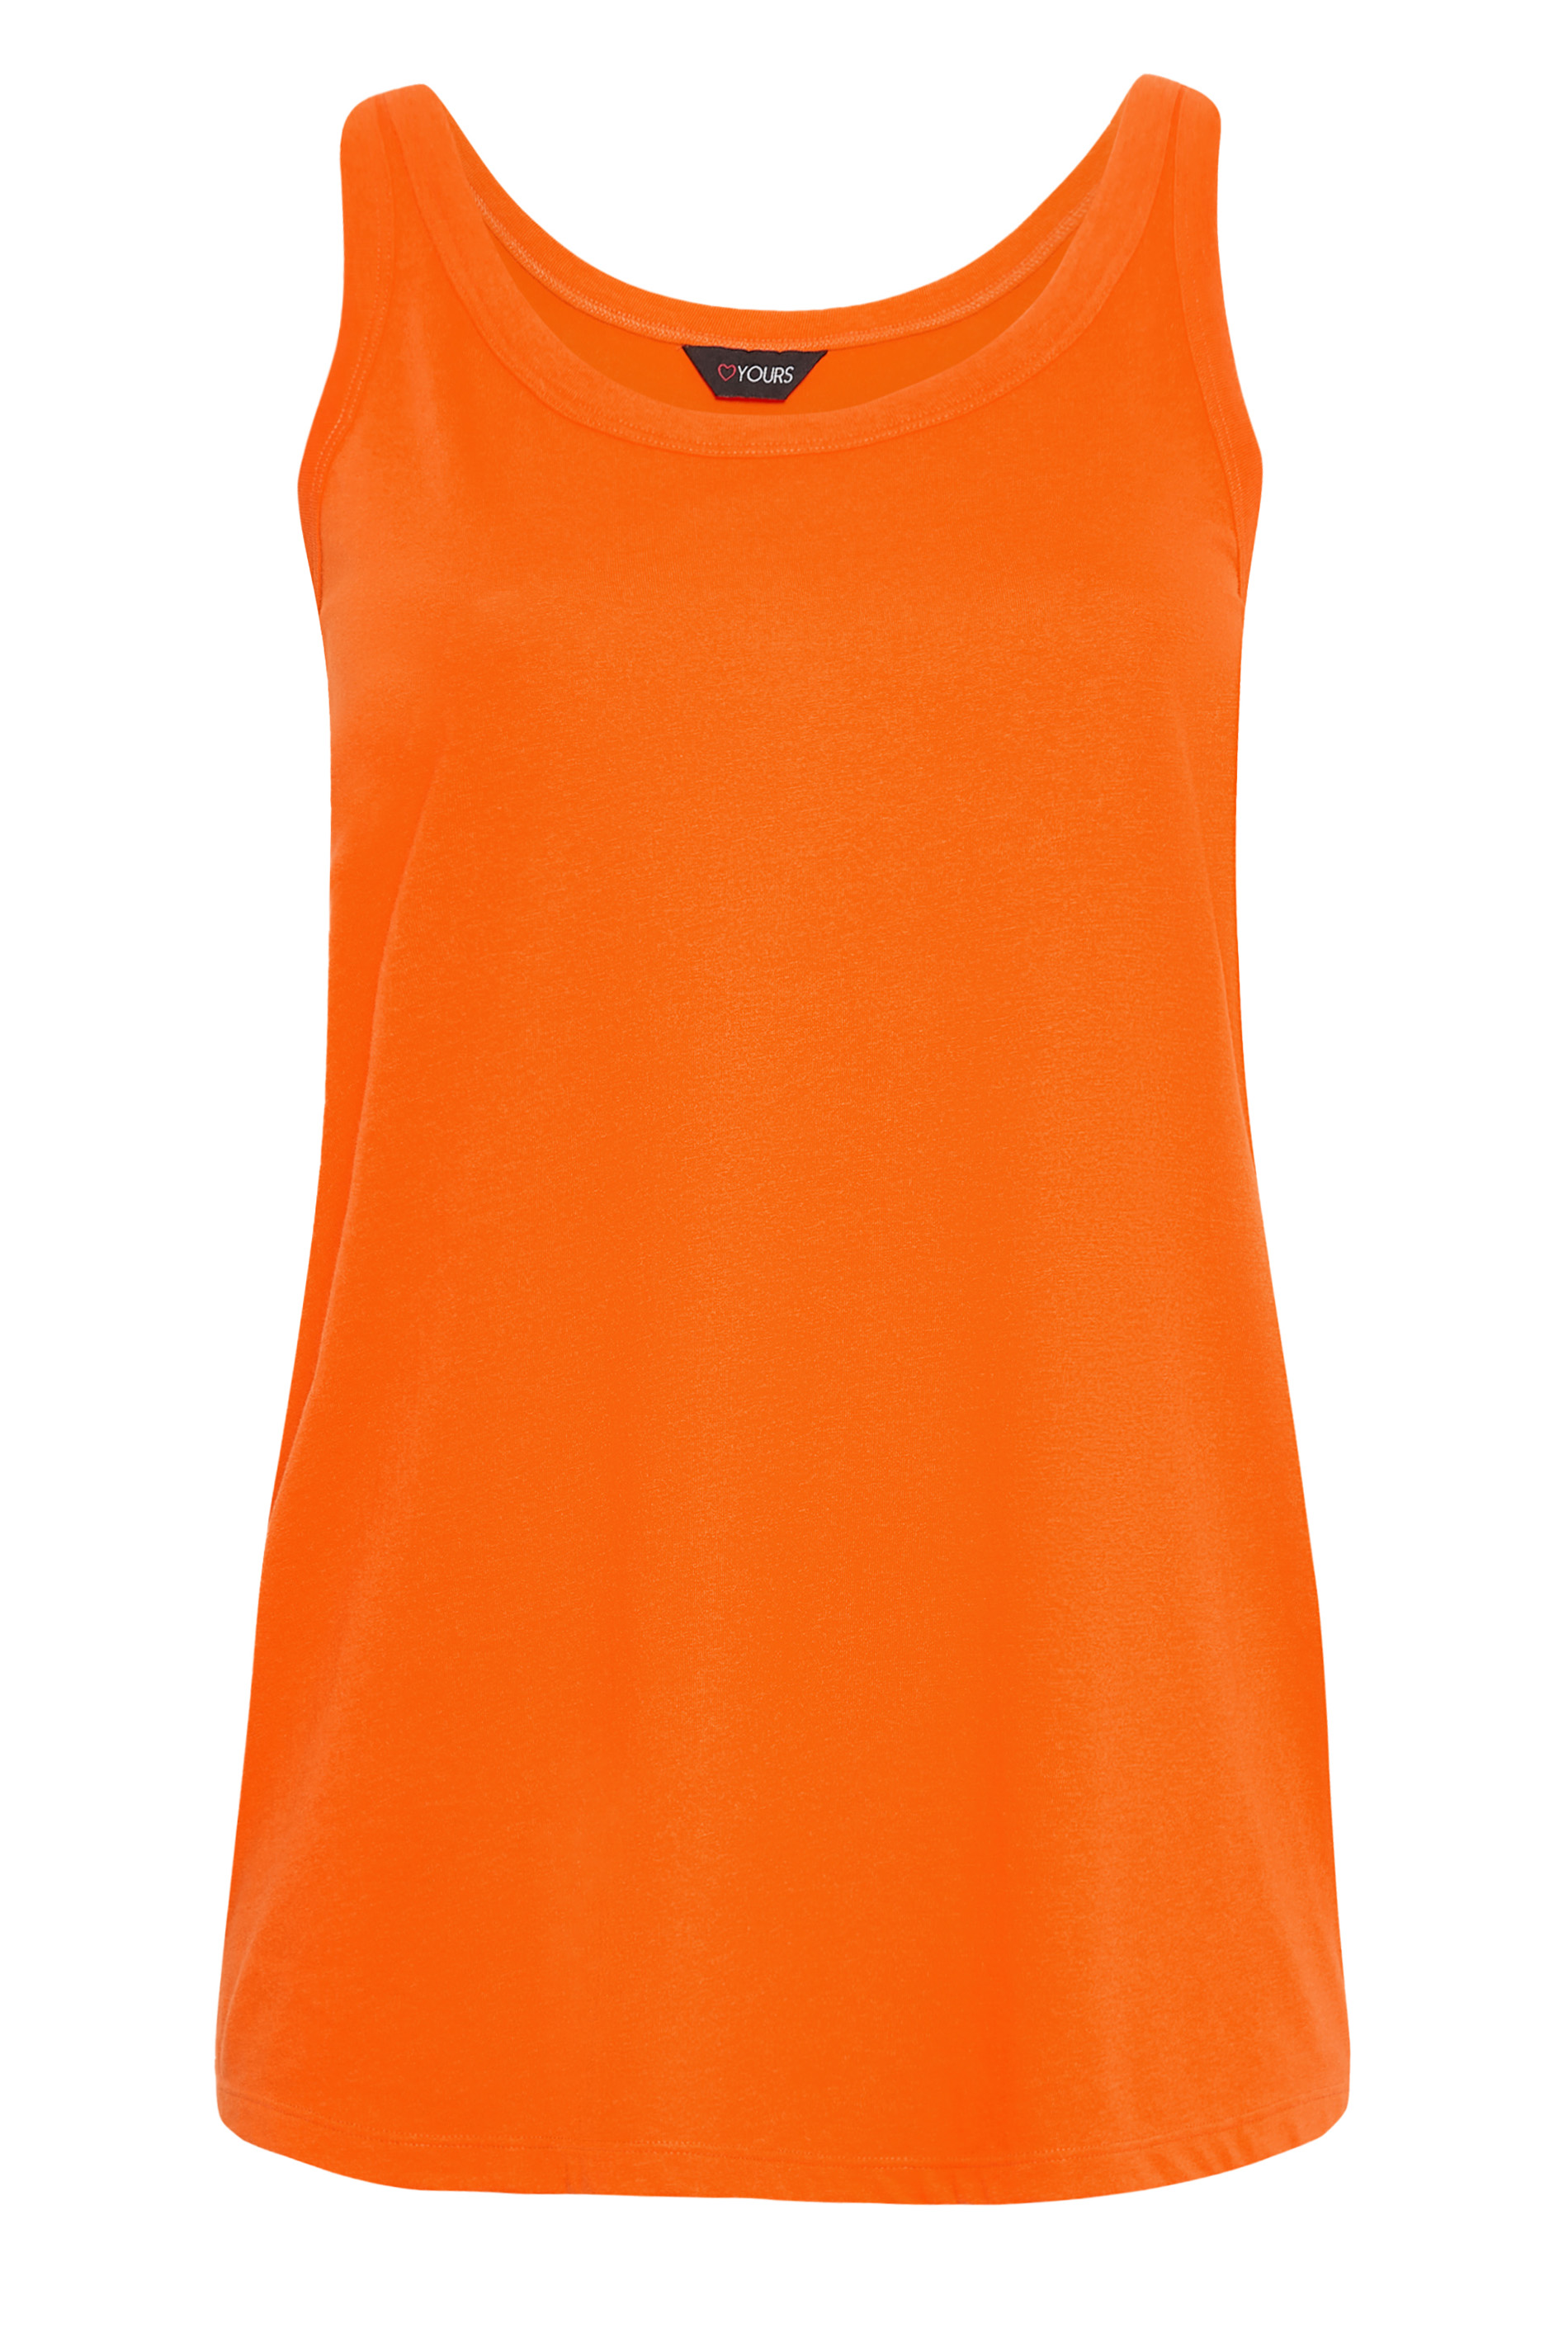 Plus Size Orange Vest Top | Yours Clothing